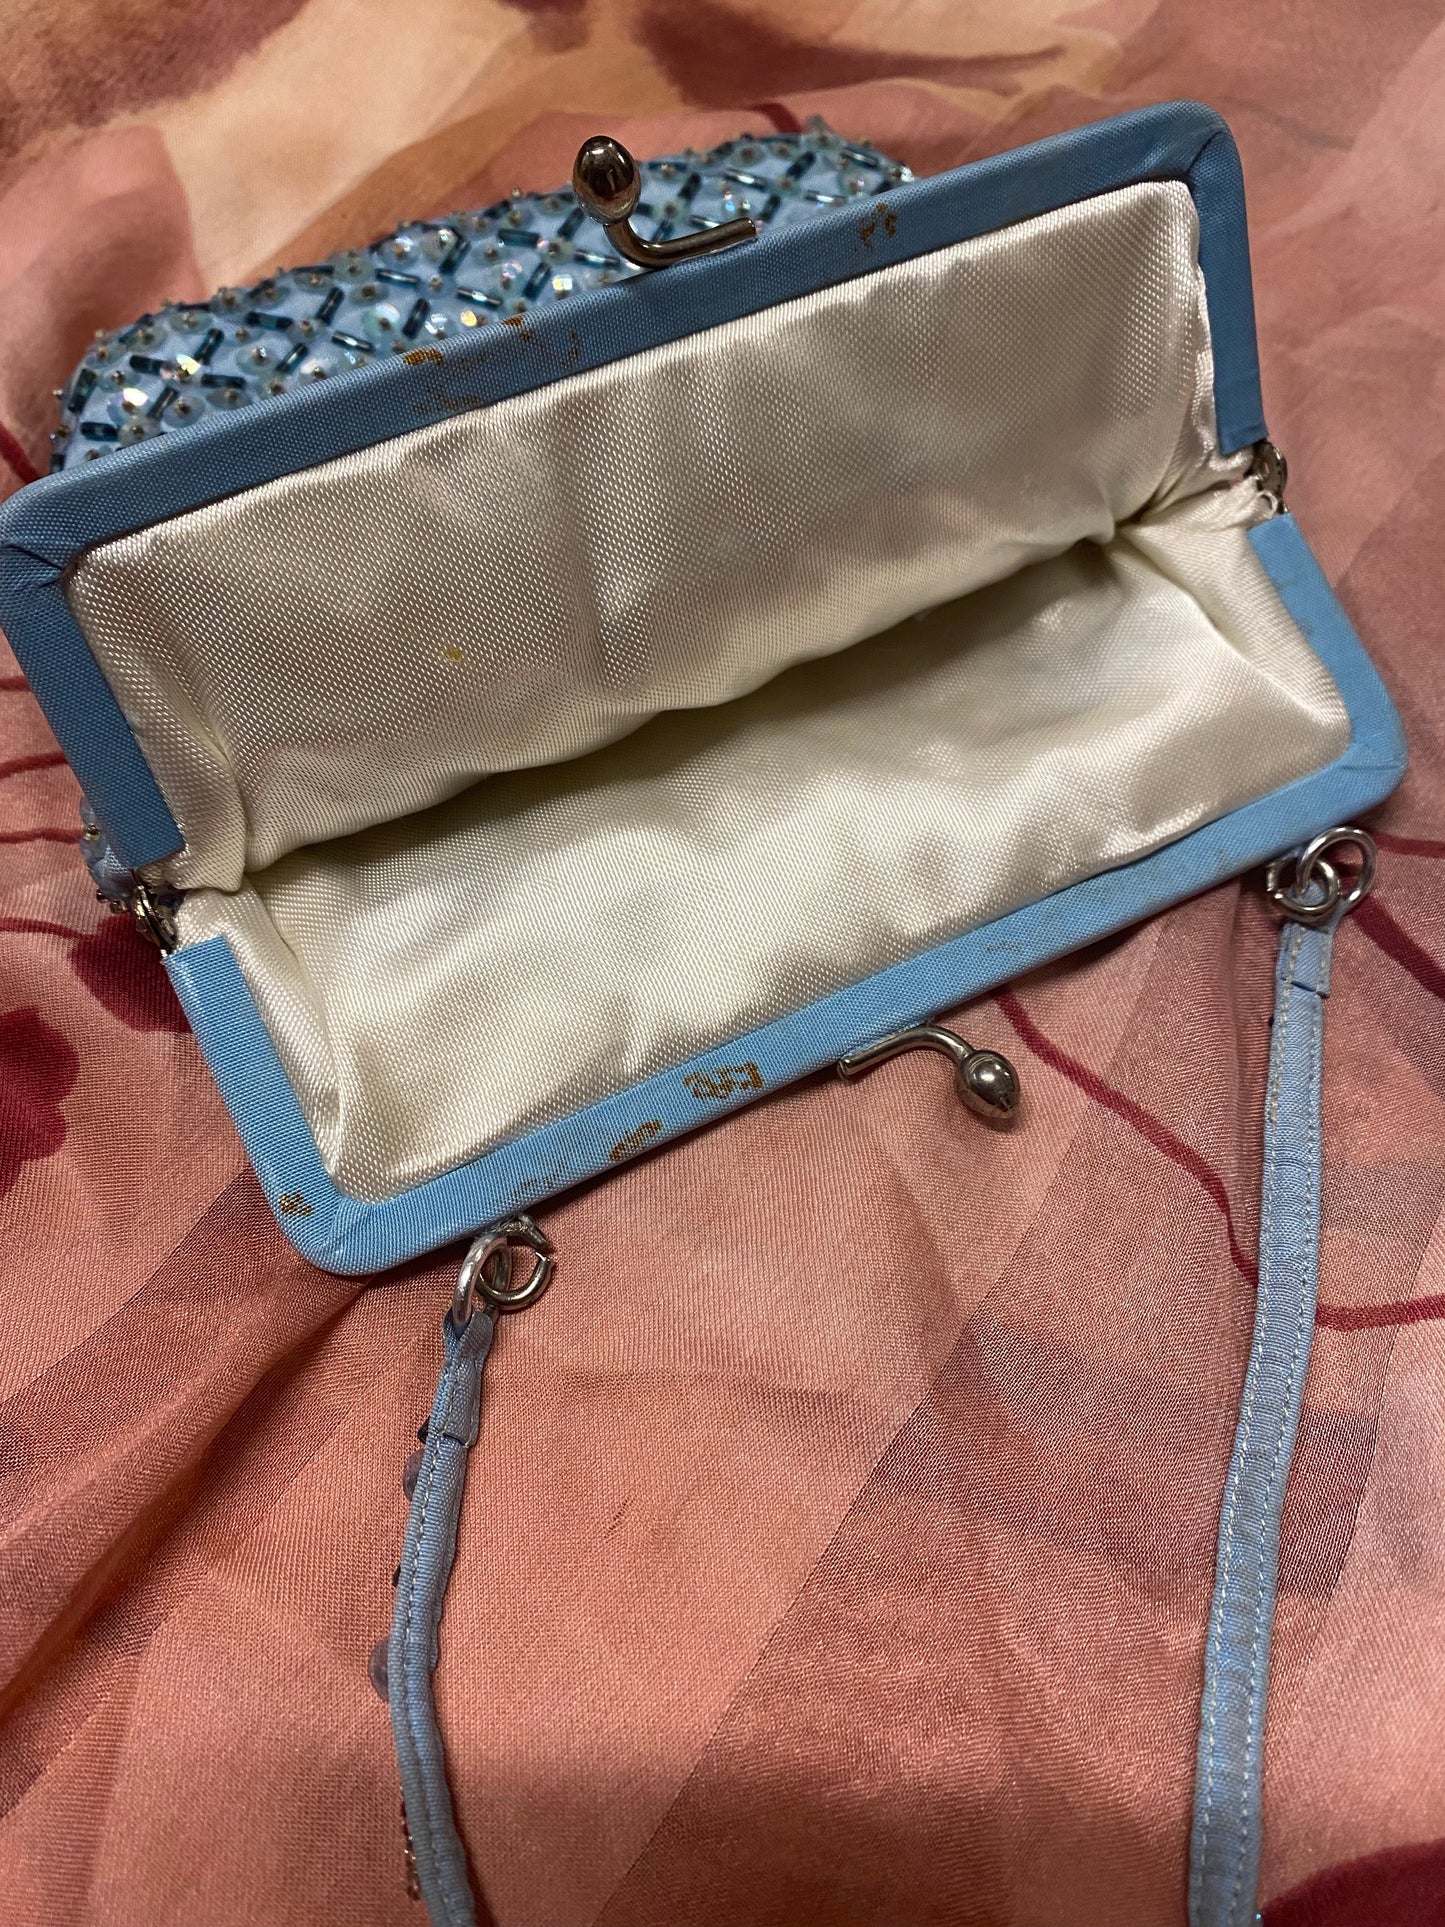 Vintage Sequin Handbag